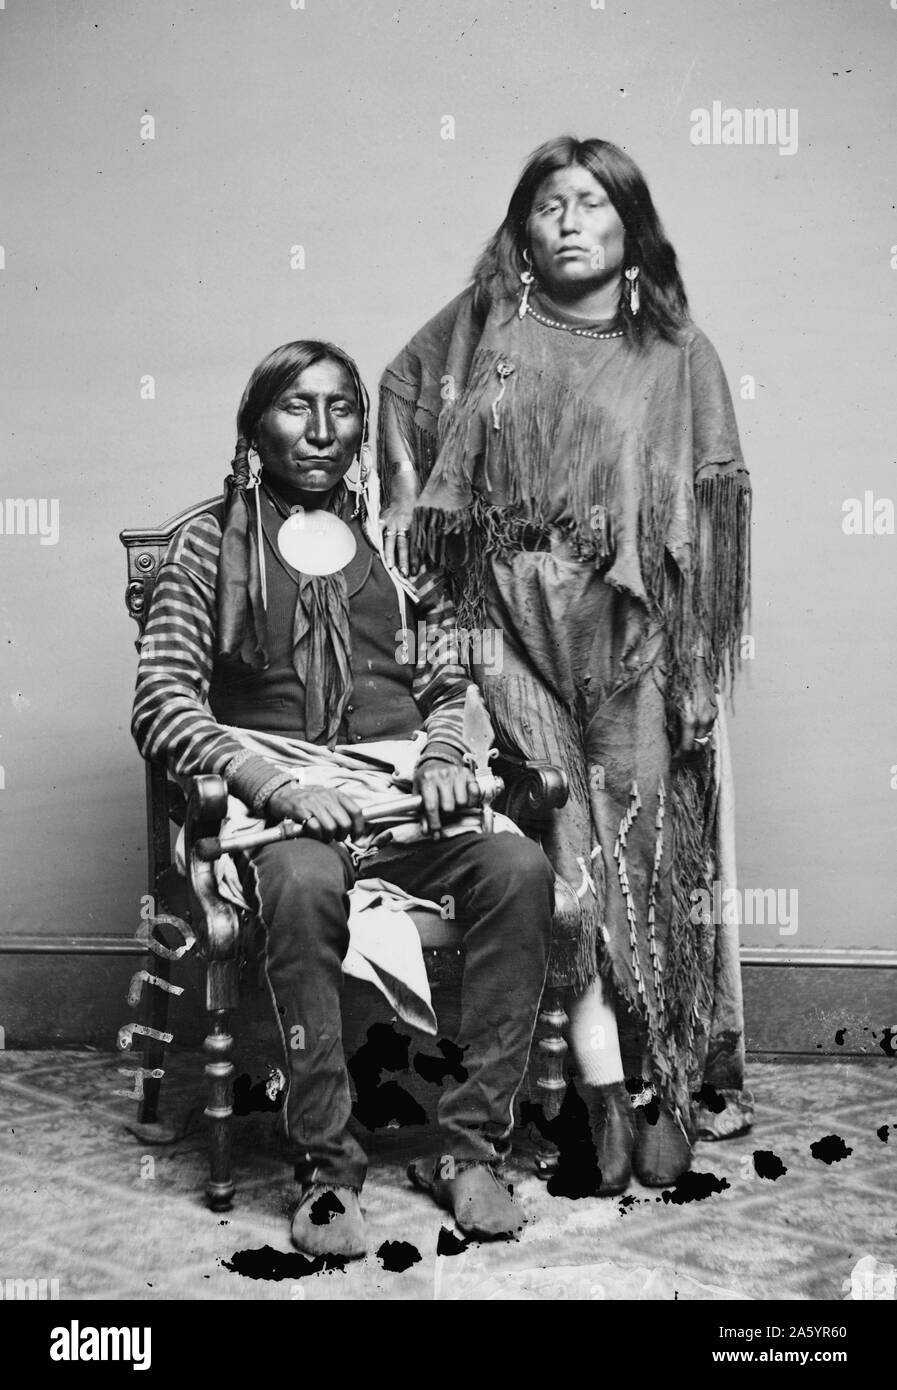 Fotoabzug der Kiowa-Indianer; Lone Wolf und seine Frau Elta. Fotografiert von Curtis (1868 – 1952), US-amerikanischer Ethnologe und Fotograf des amerikanischen Westens und der indianischen Völker. Datiert 1914 Stockfoto